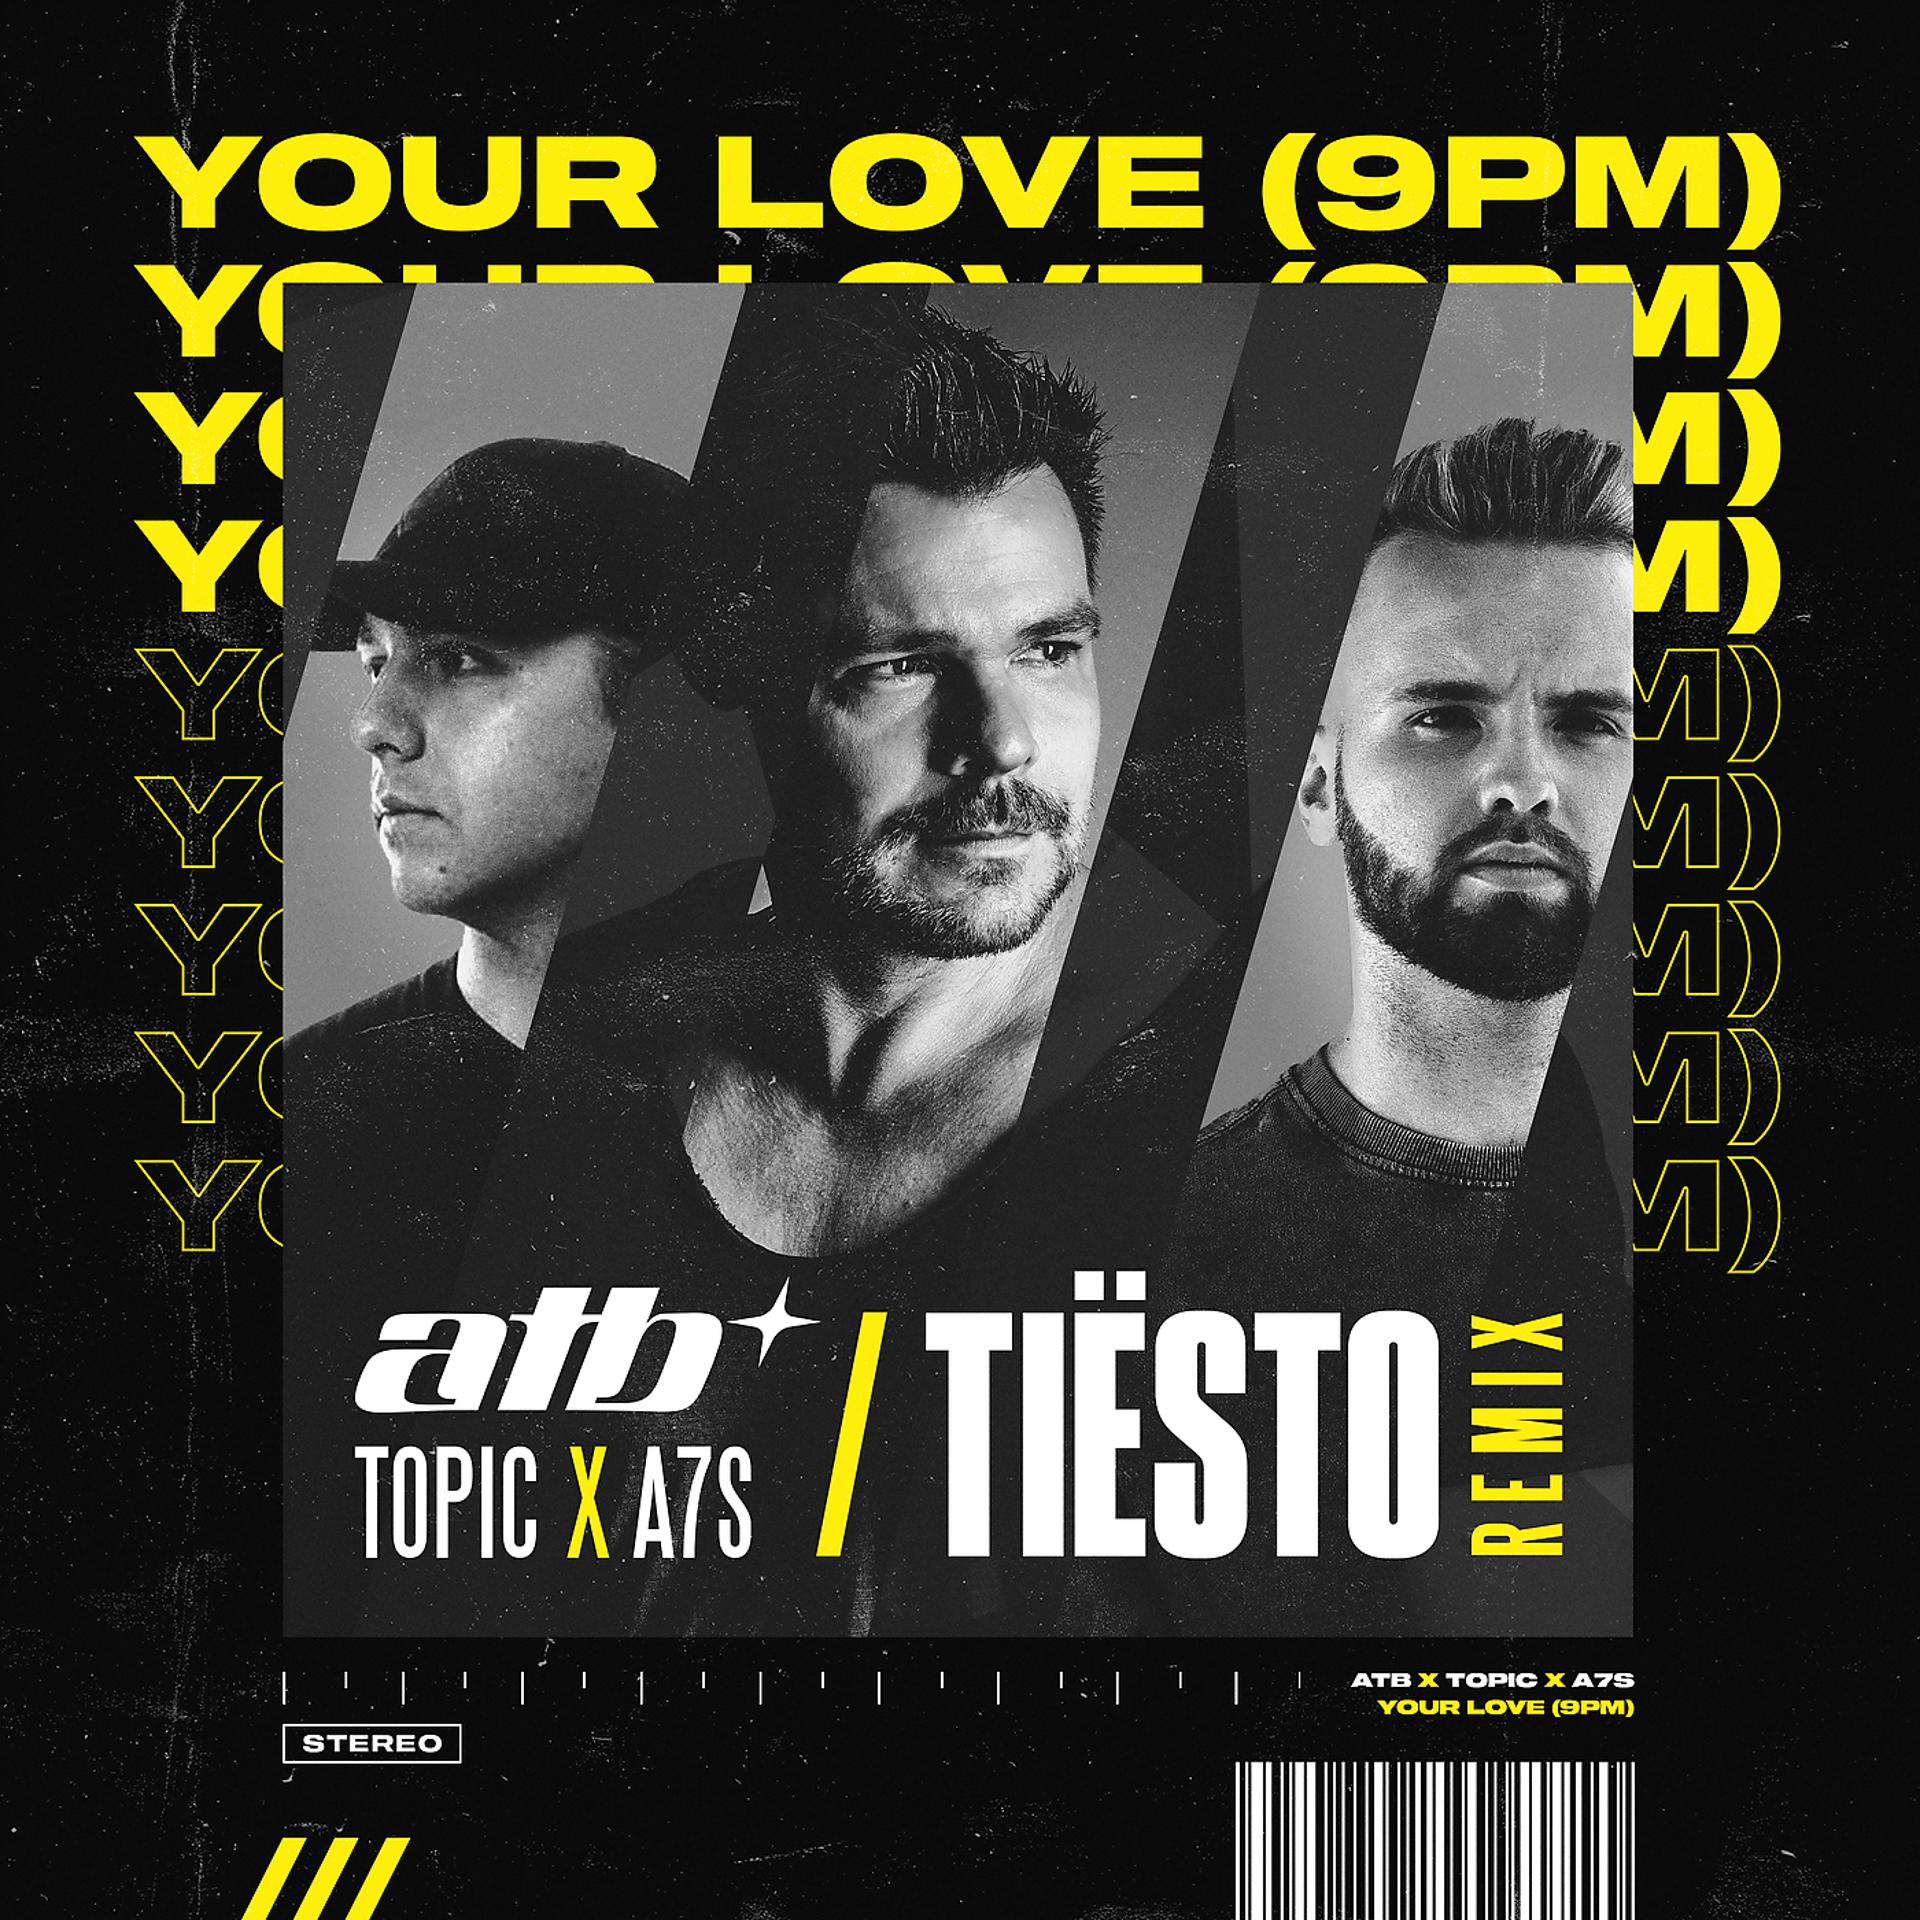 Постер к треку ATB, Topic, A7S, Tiësto - Your Love (9PM) (Tiësto Remix)